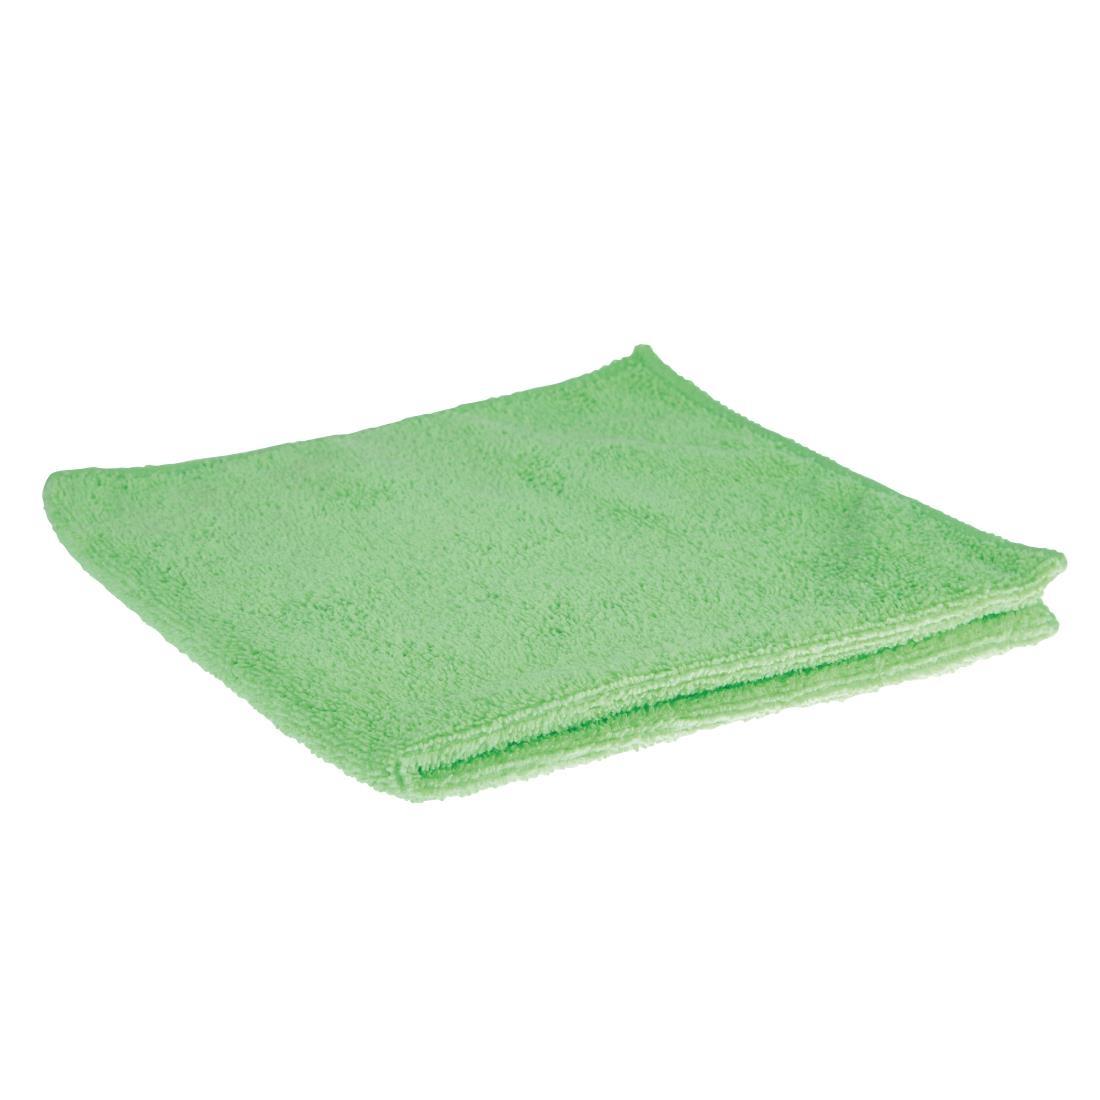 Jantex Microfibre Cloths Green (Pack of 5) - GF609  - 1